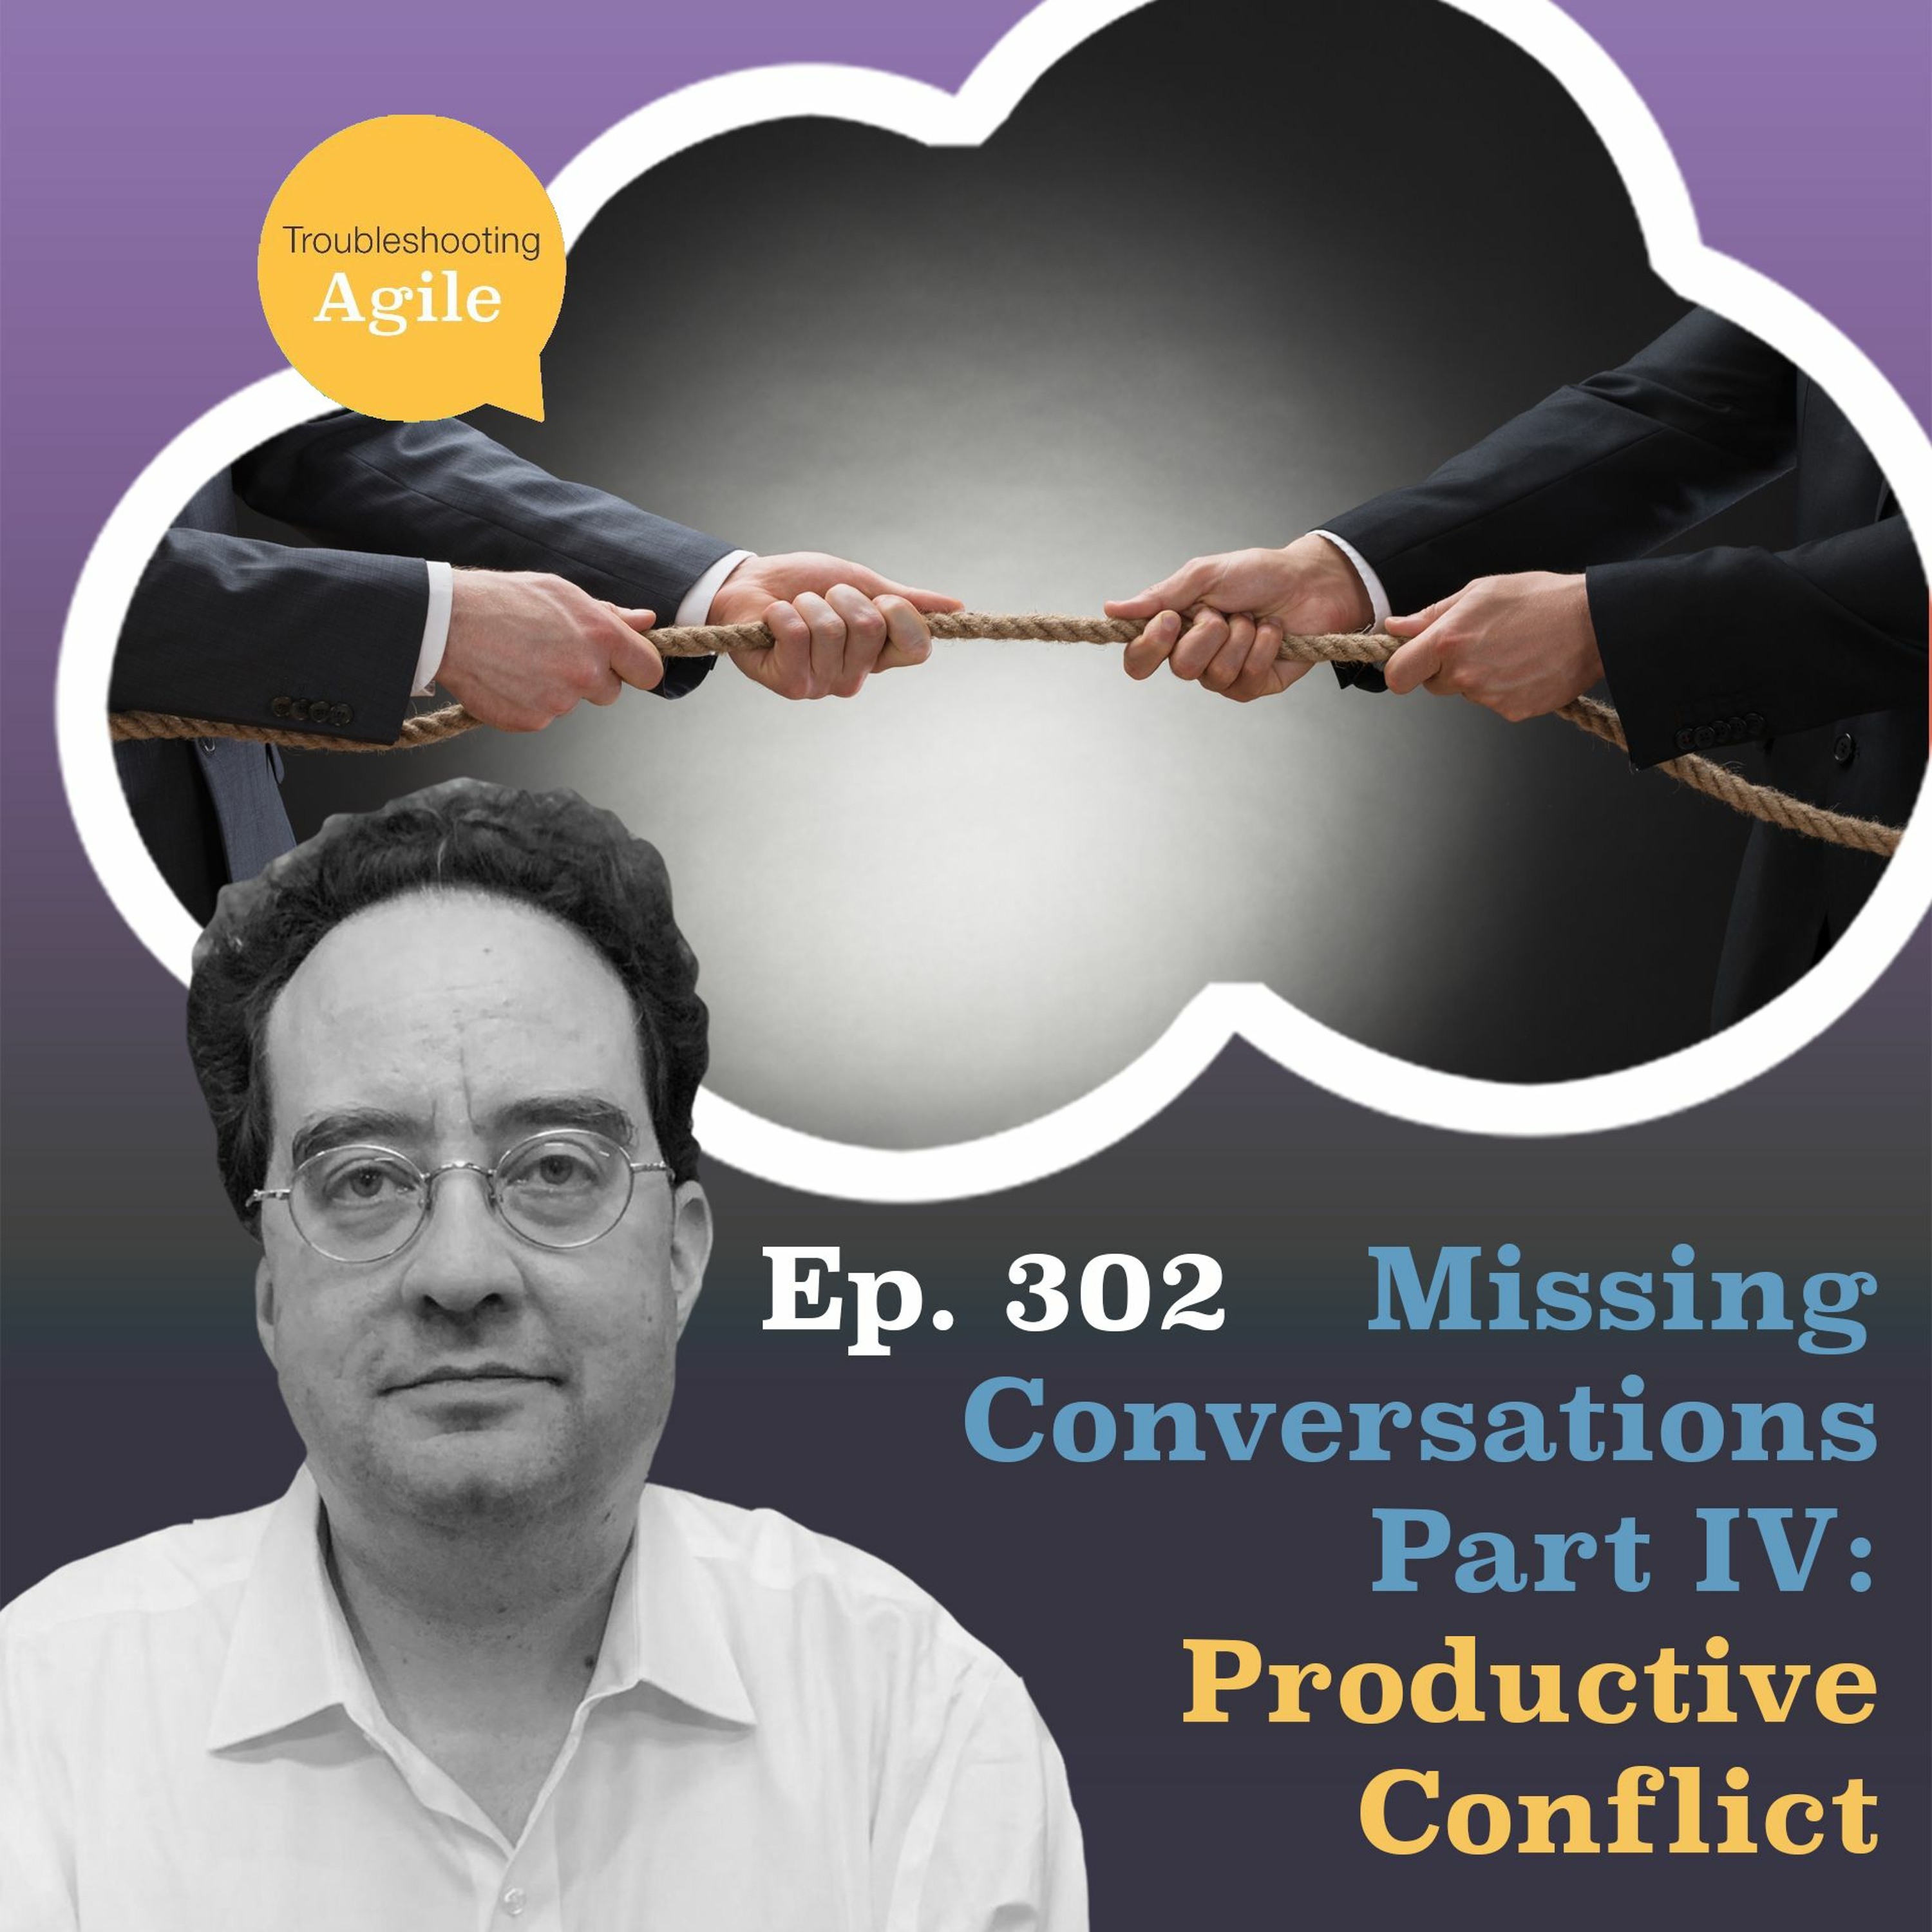 Missing Conversations Part IV: Productive Conflict